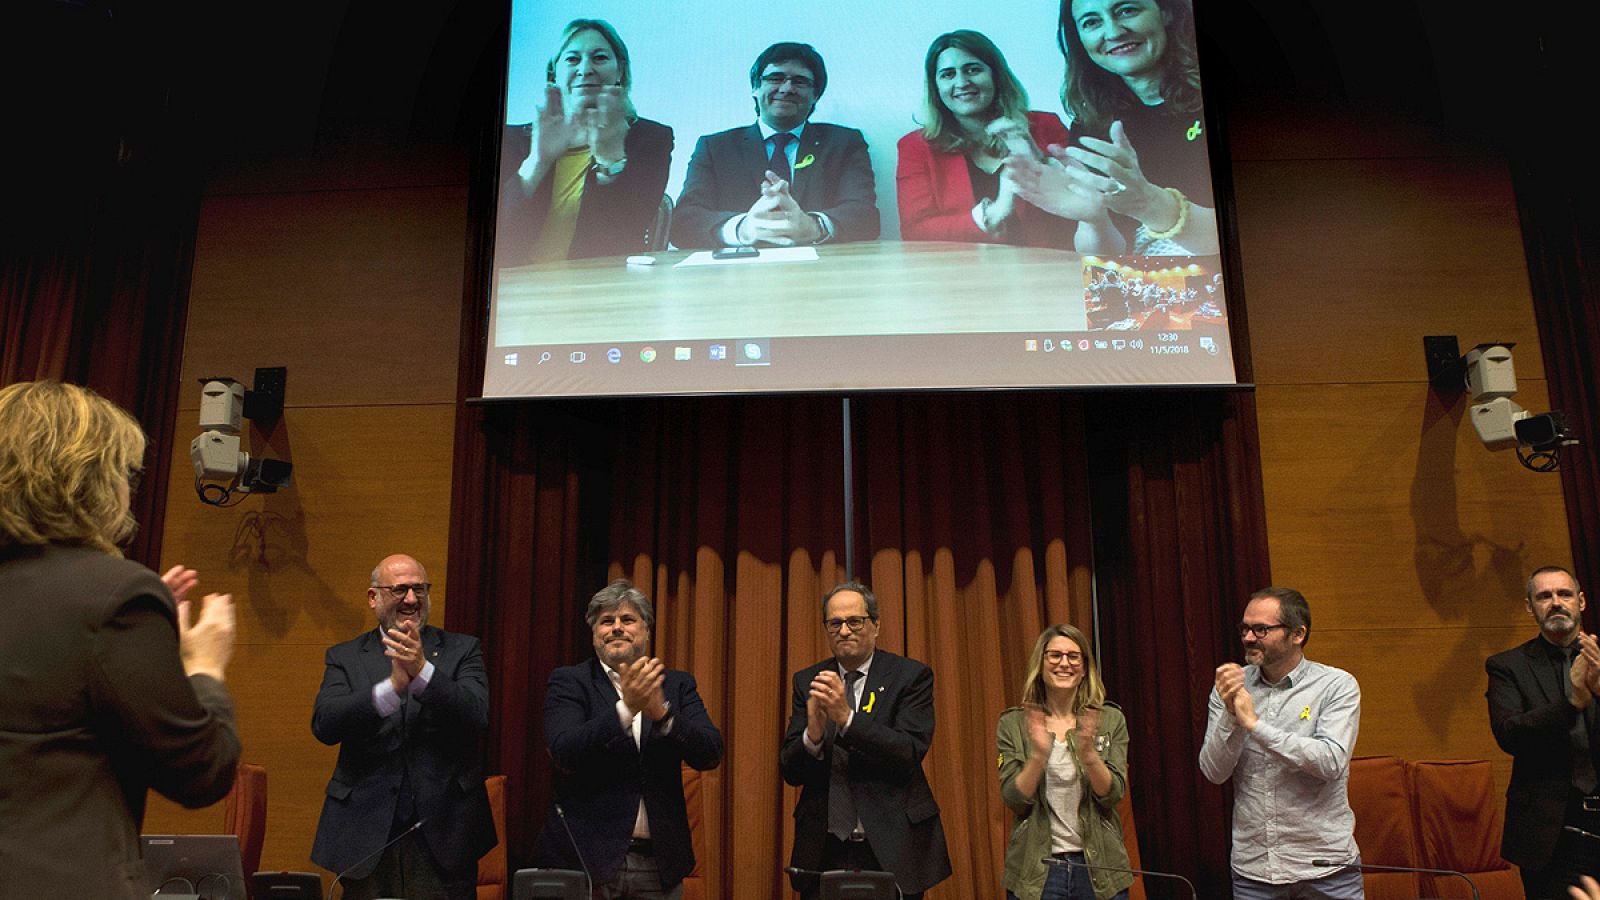 En videoconferencia, Carles Puigdemont asiste a la reunión del grupo parlamentario de JxCat tras designar a Torra candidato a la Generalitat.